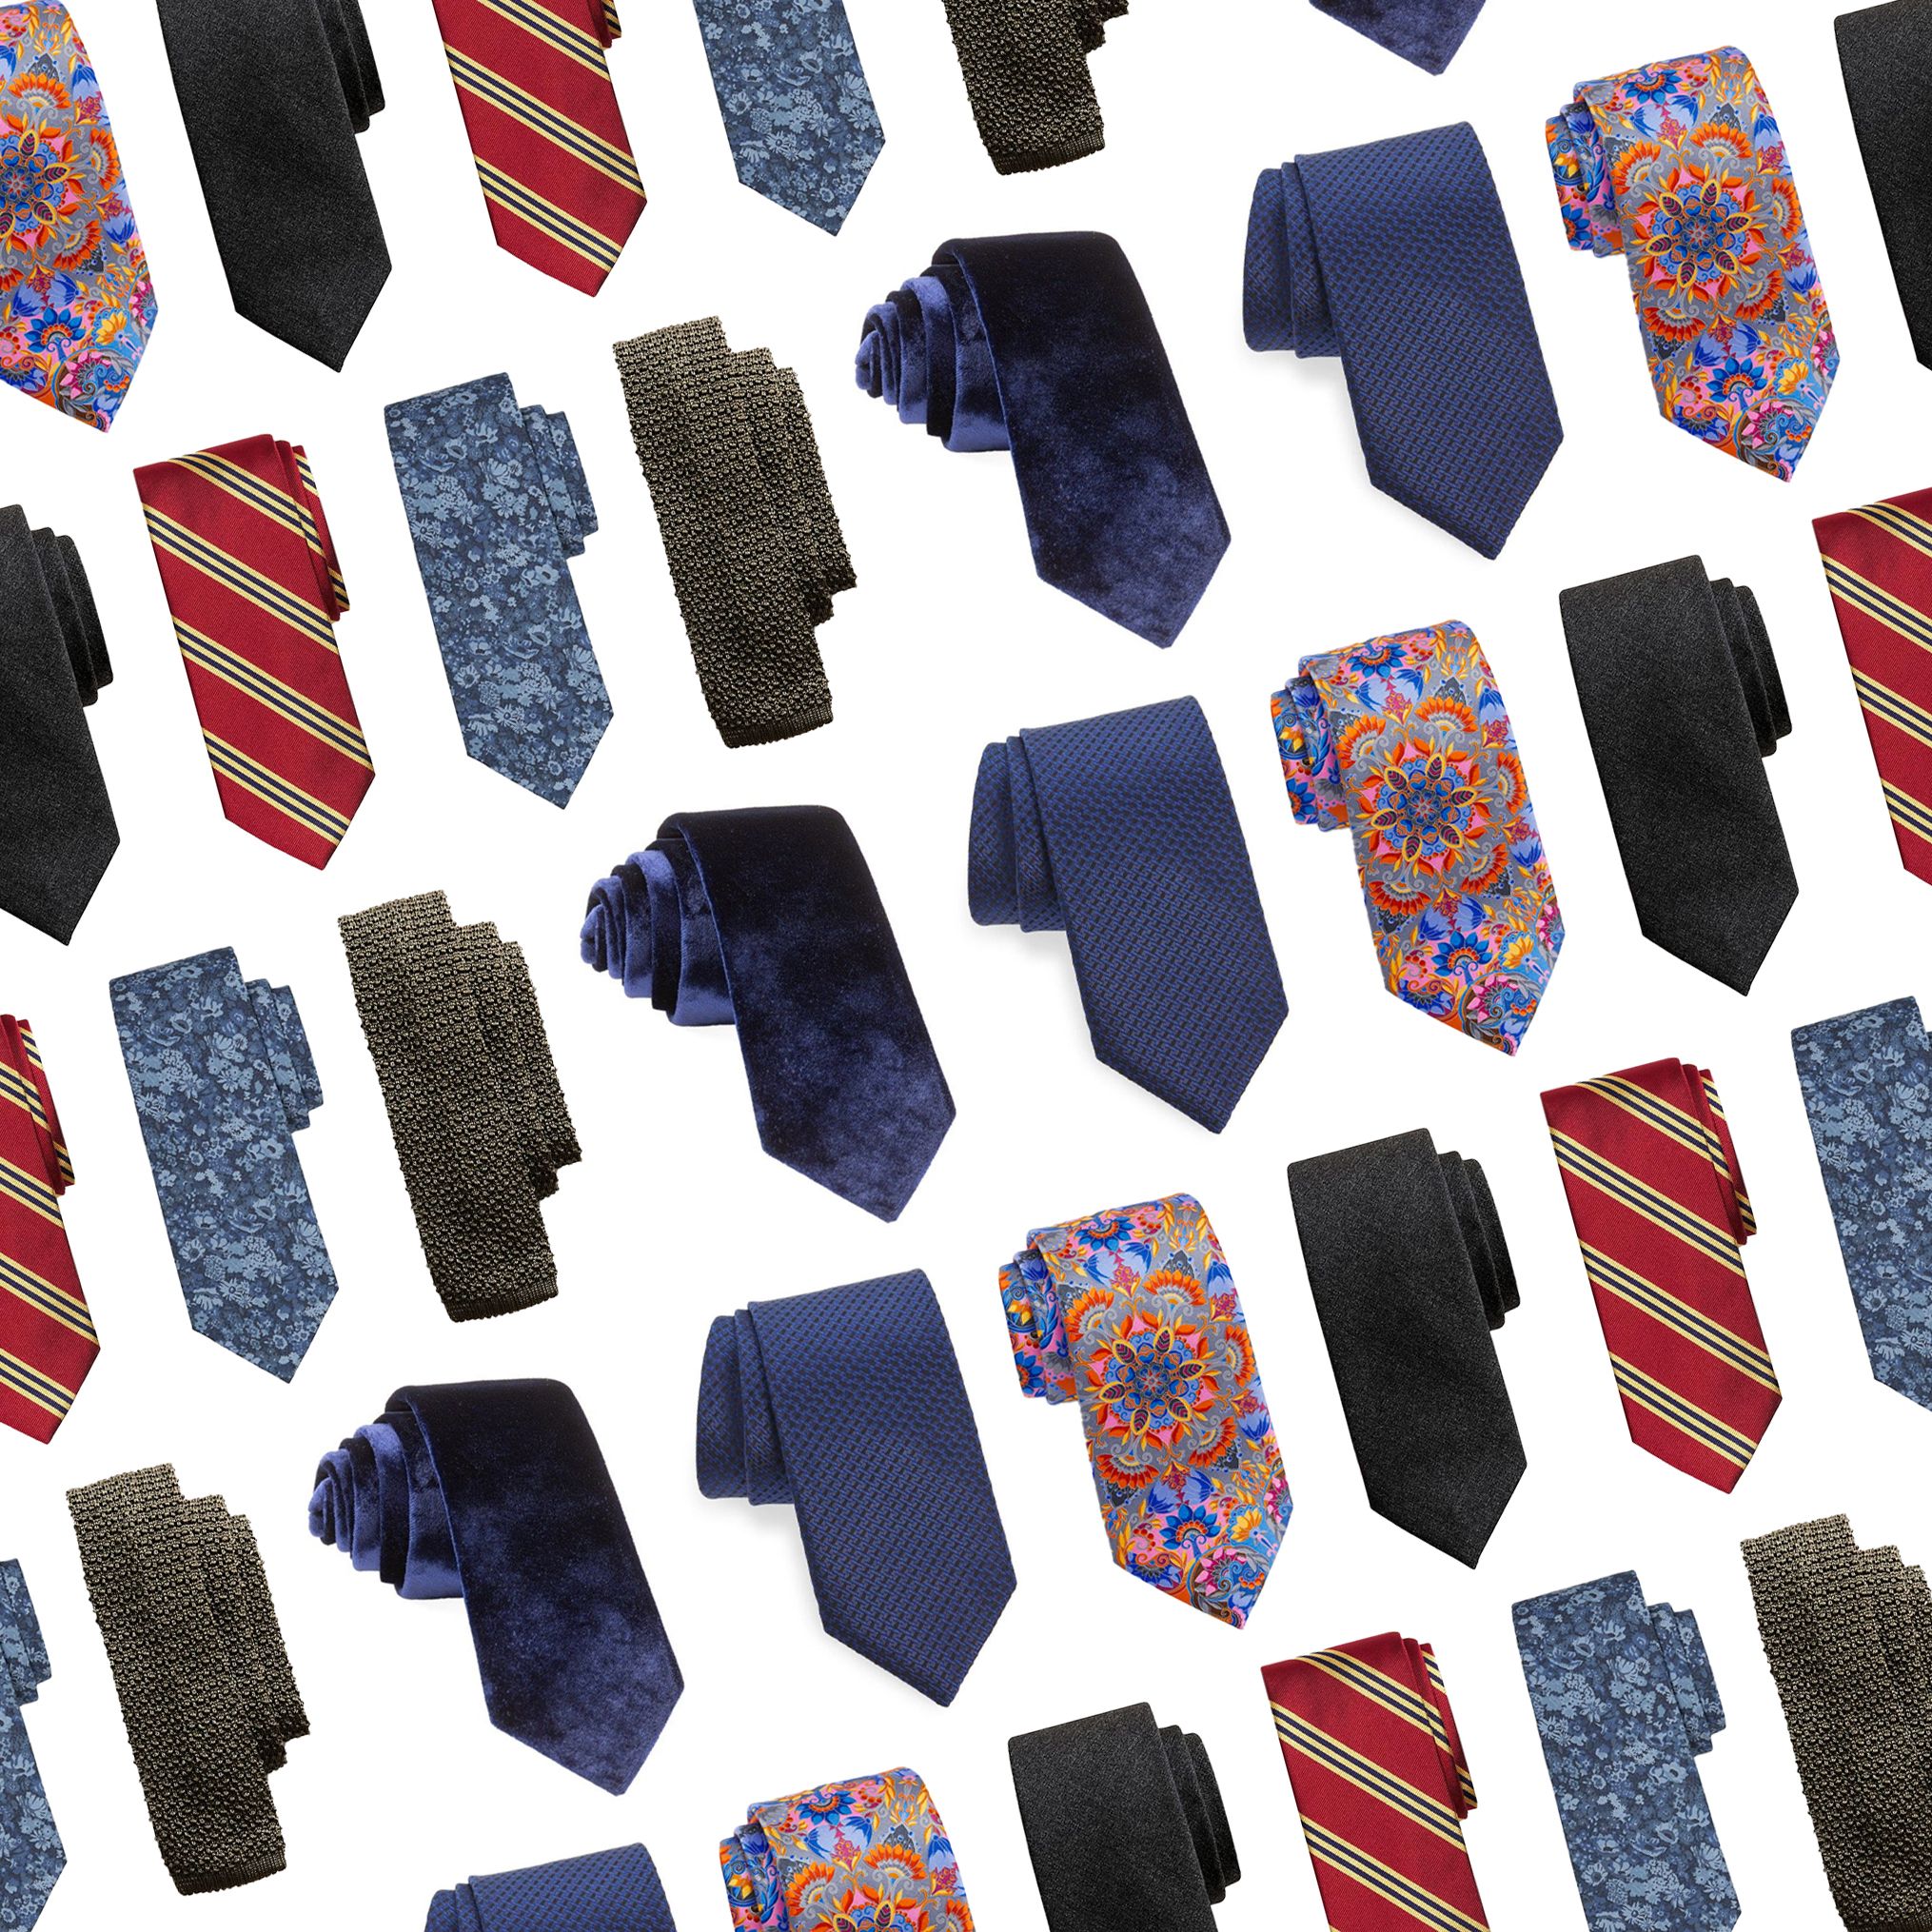 15 Ties for Men - Shop Designer Ties for Men